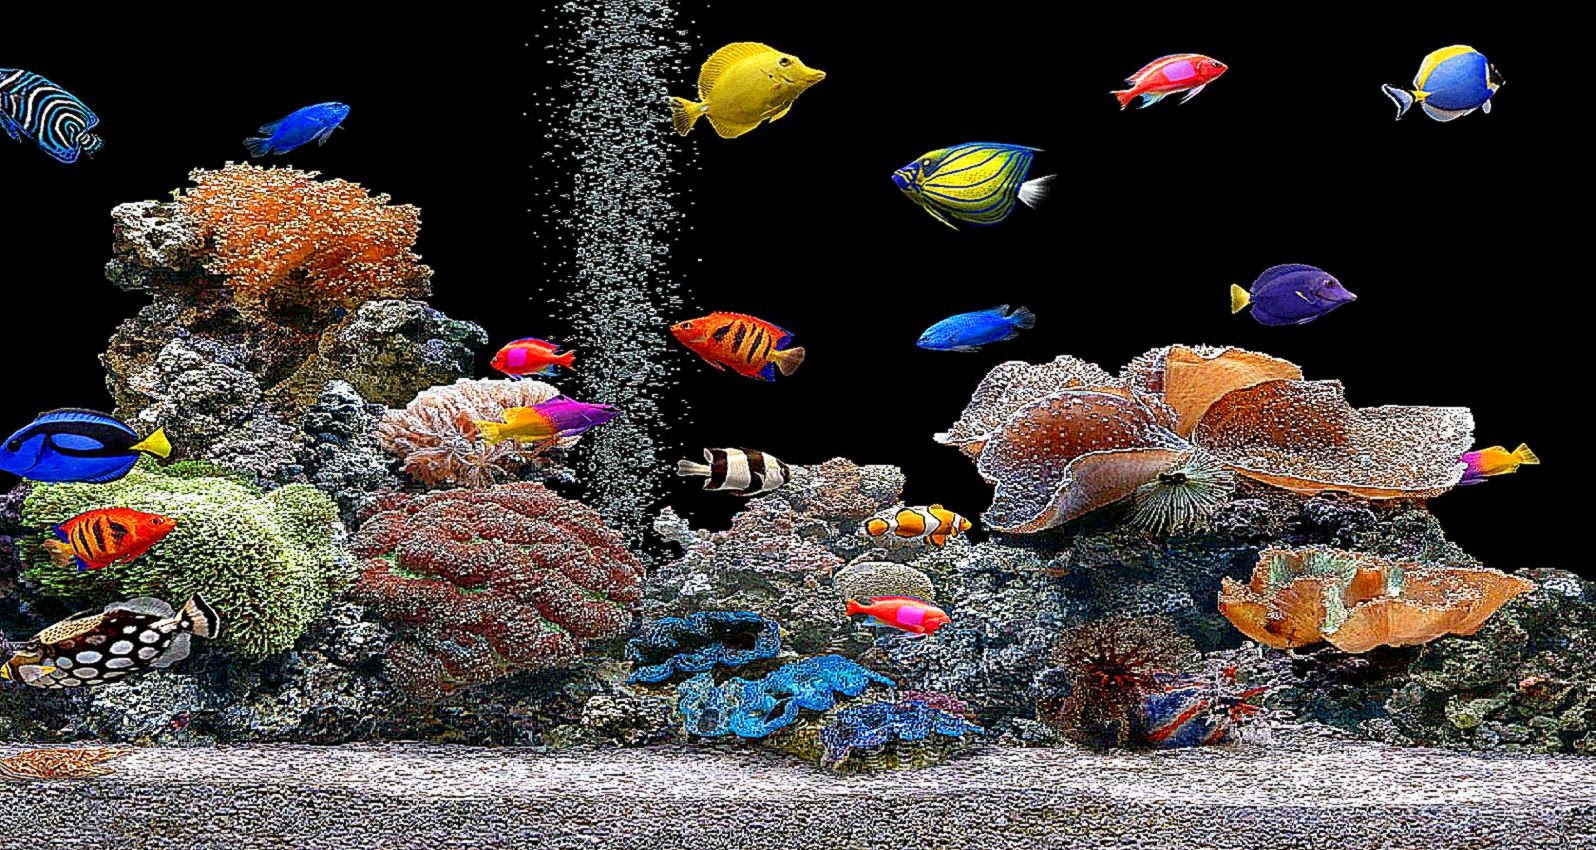 Free 3D Fish Tank Wallpaper - WallpaperSafari